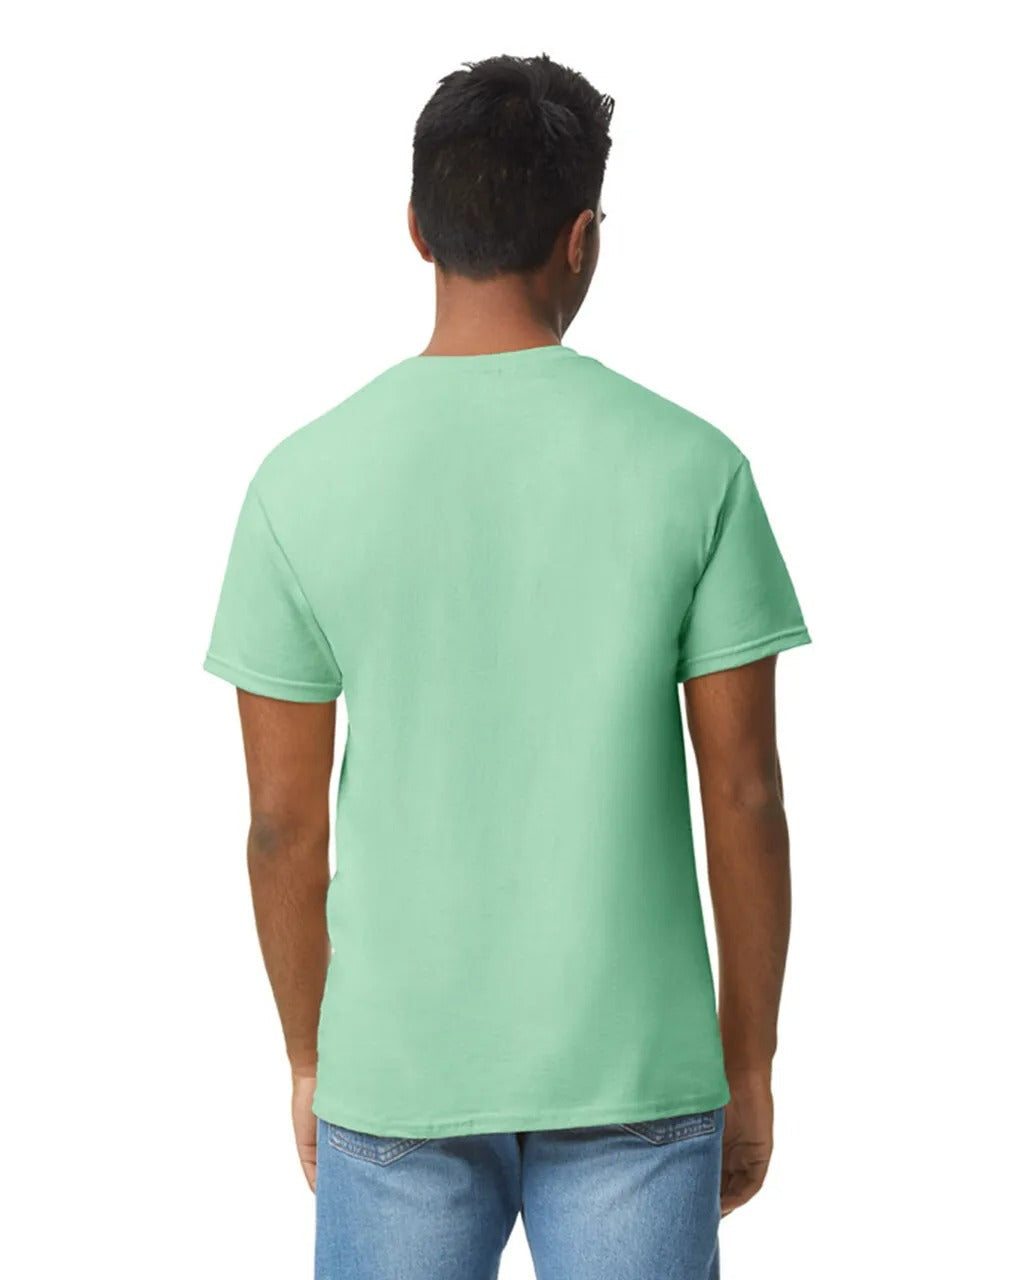 T-Shirt - Mint Green